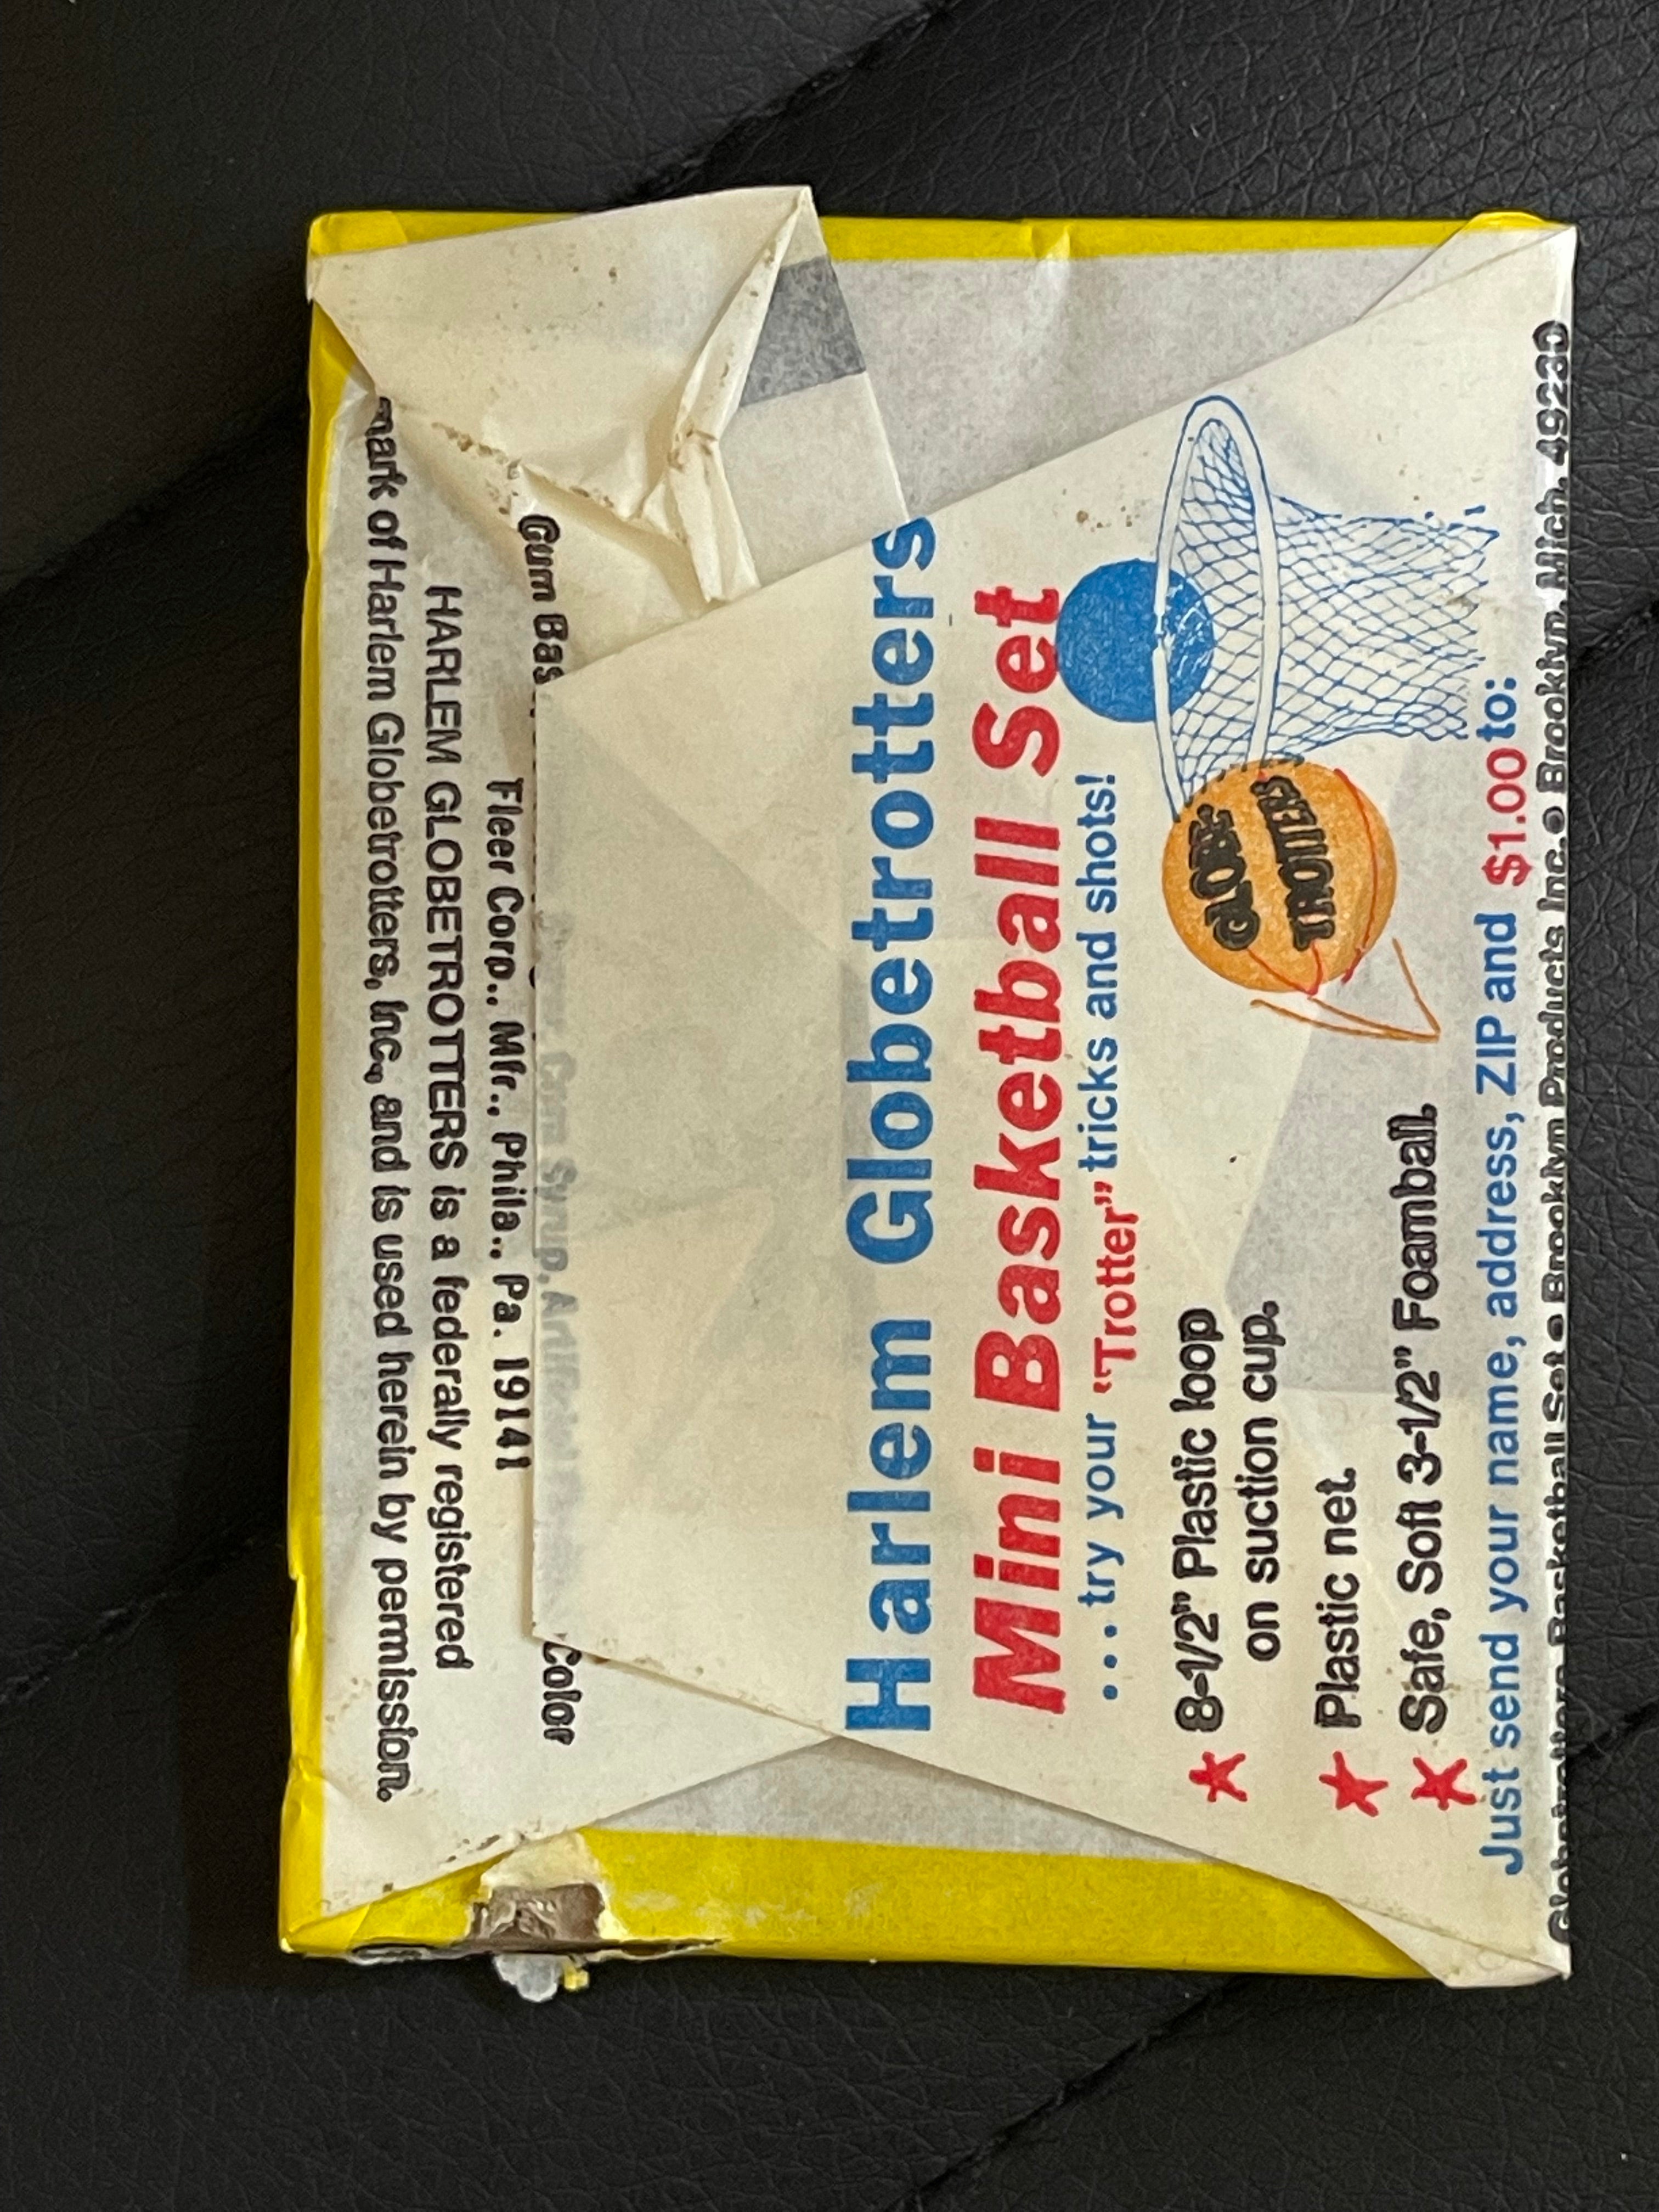 Harlem Globetrotters rare basketball cards sealed pack 1973